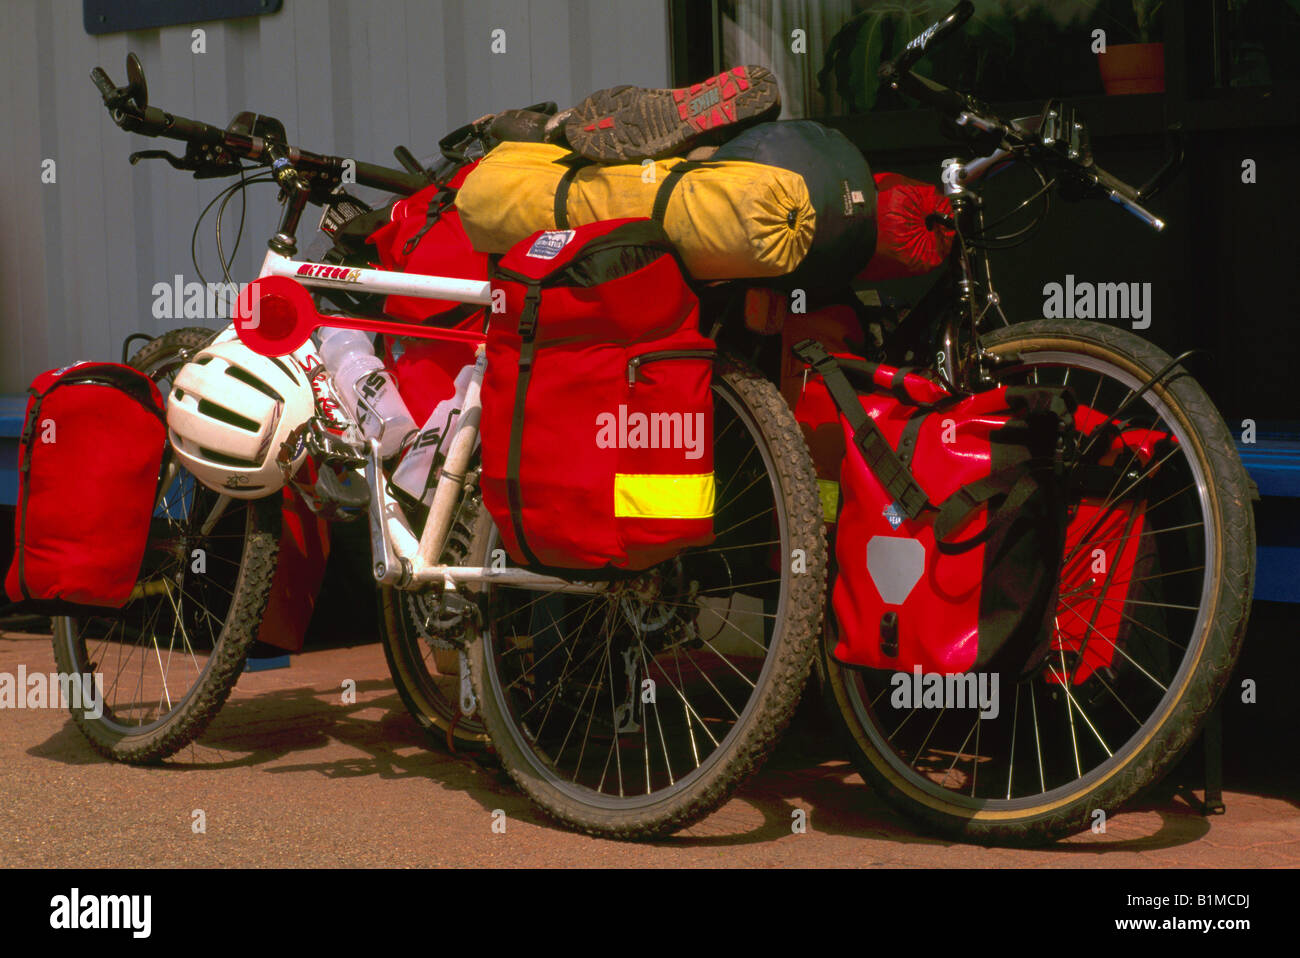 Fahrräder / Bikes mit Beuteln verpackt und bereit für Touren und Reisen auf BC Ferry, British Columbia, Kanada Stockfoto